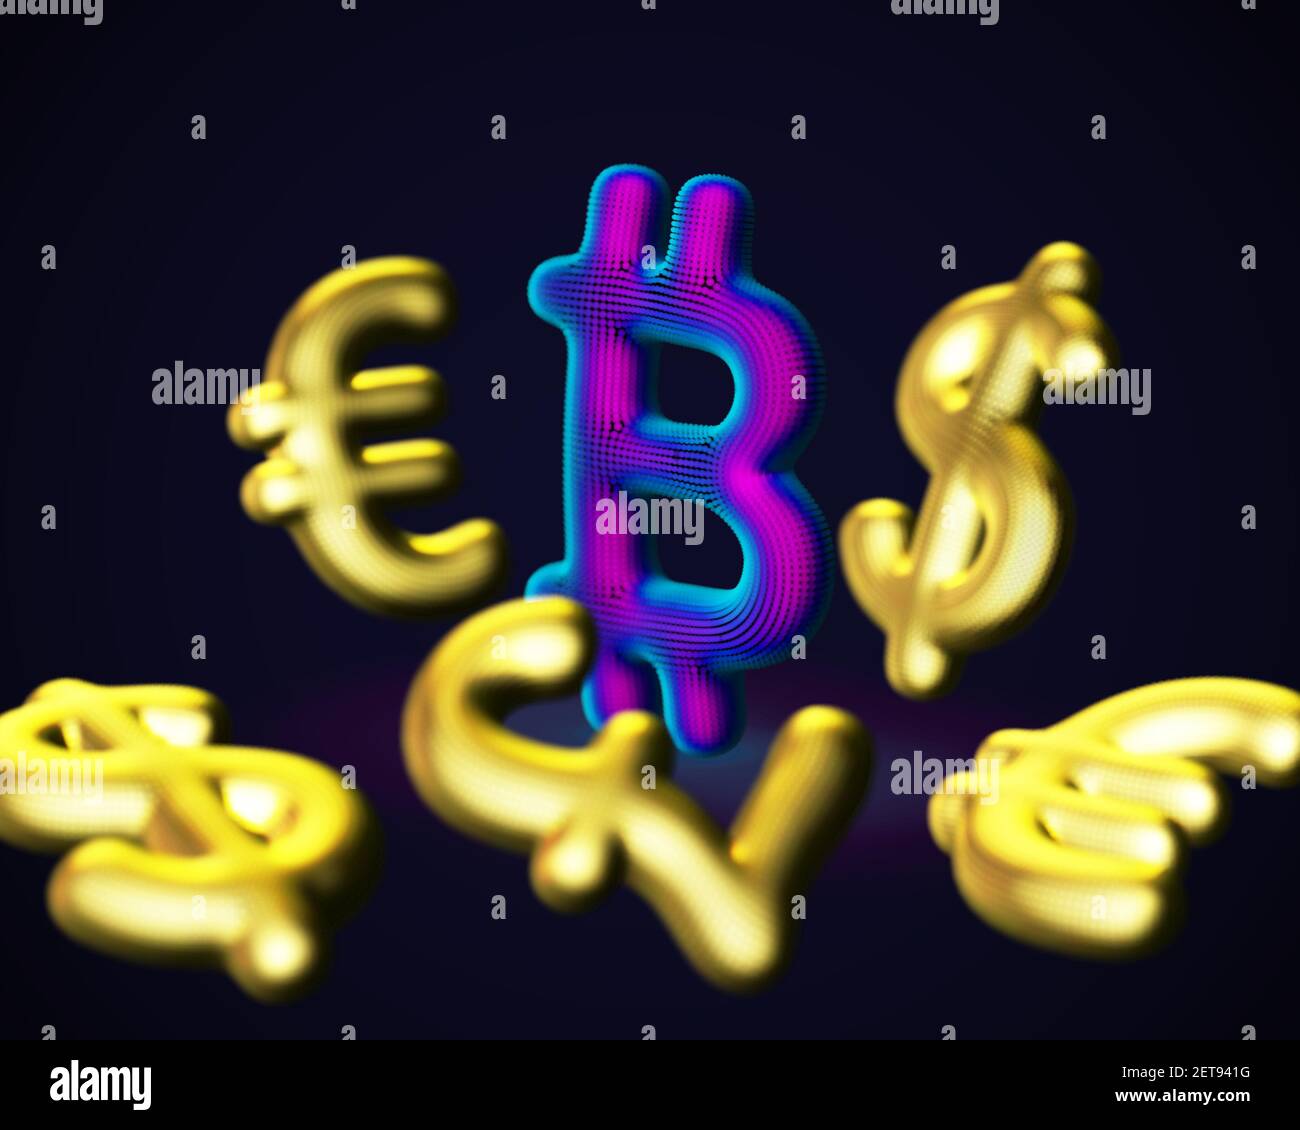 Logo 3D Bitcoin criptovalente circondato da cartelli Fiat Currencies Illustrazione Vettoriale